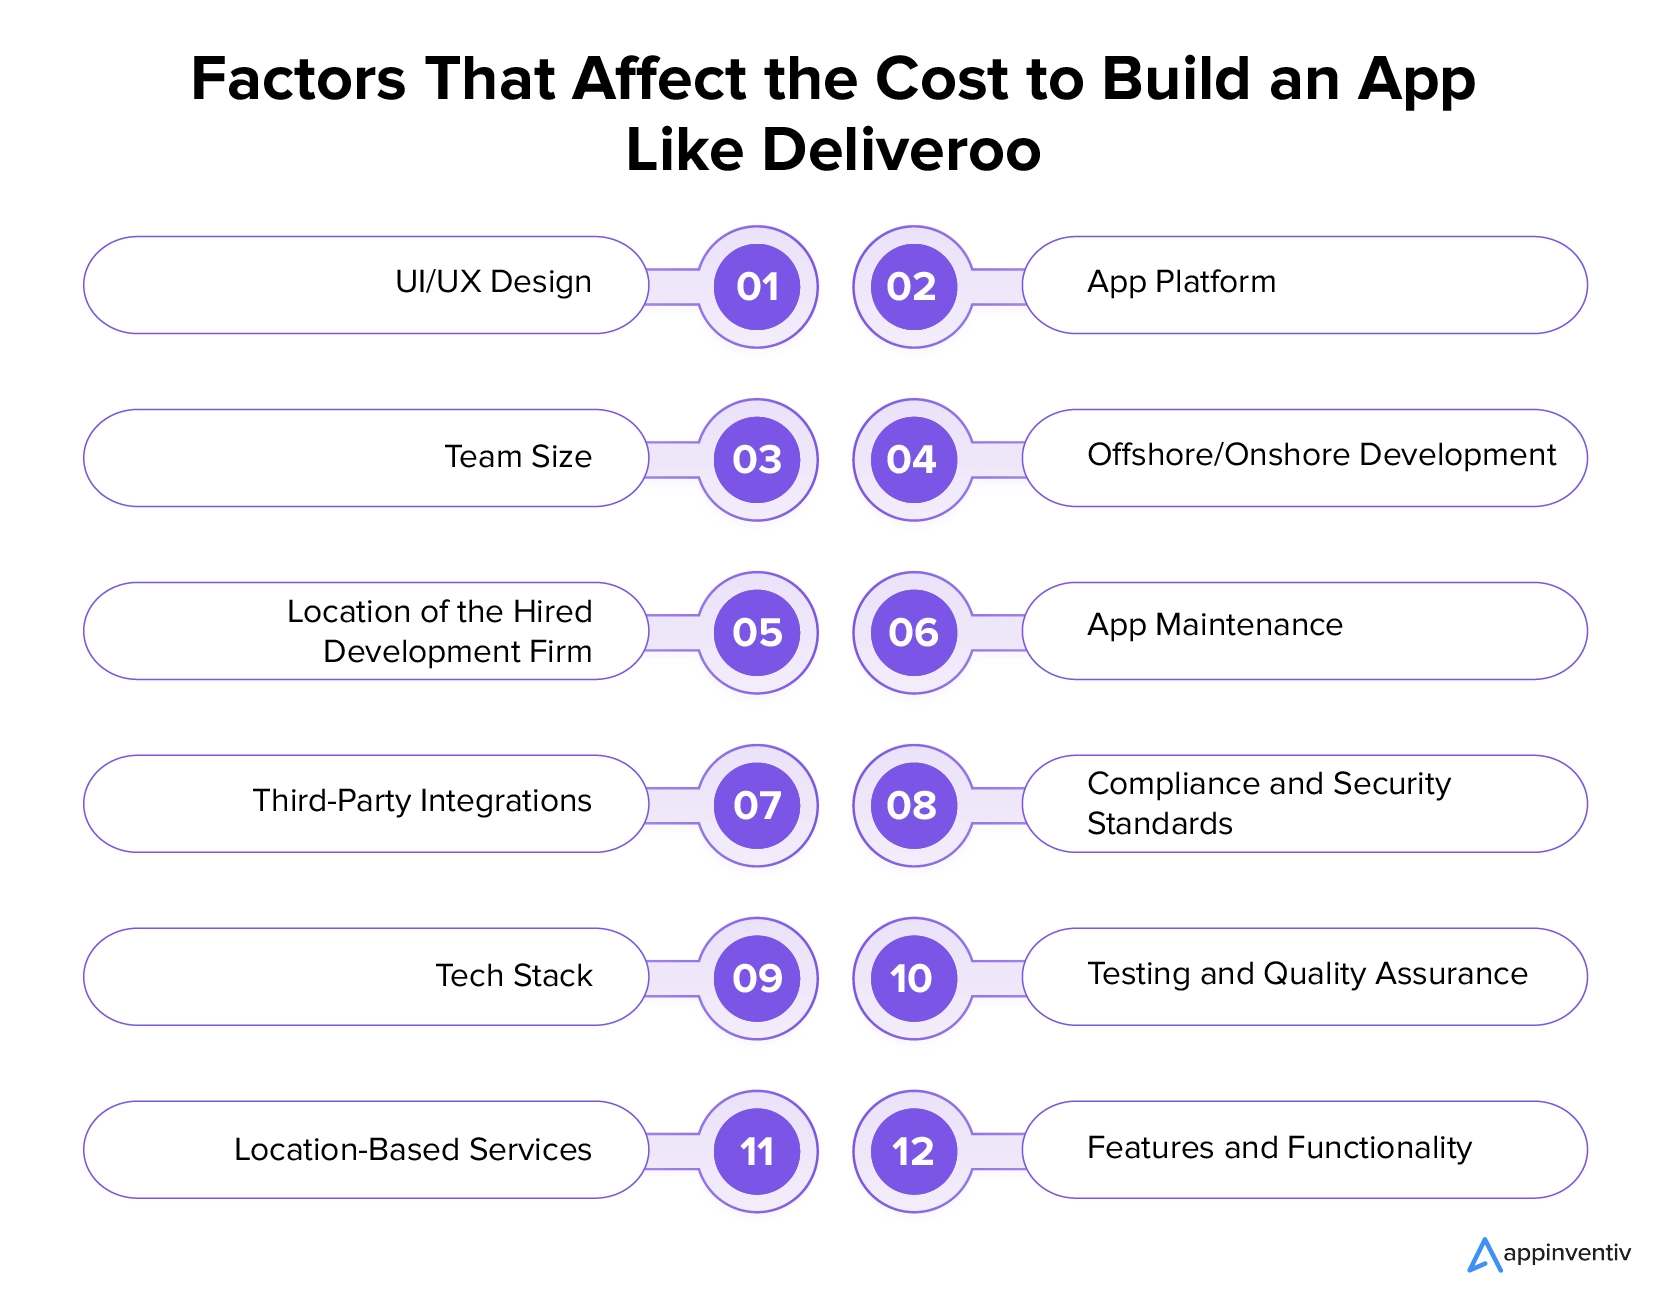 Faktor-Faktor yang Mempengaruhi Biaya Pembuatan Aplikasi Seperti Deliveroo